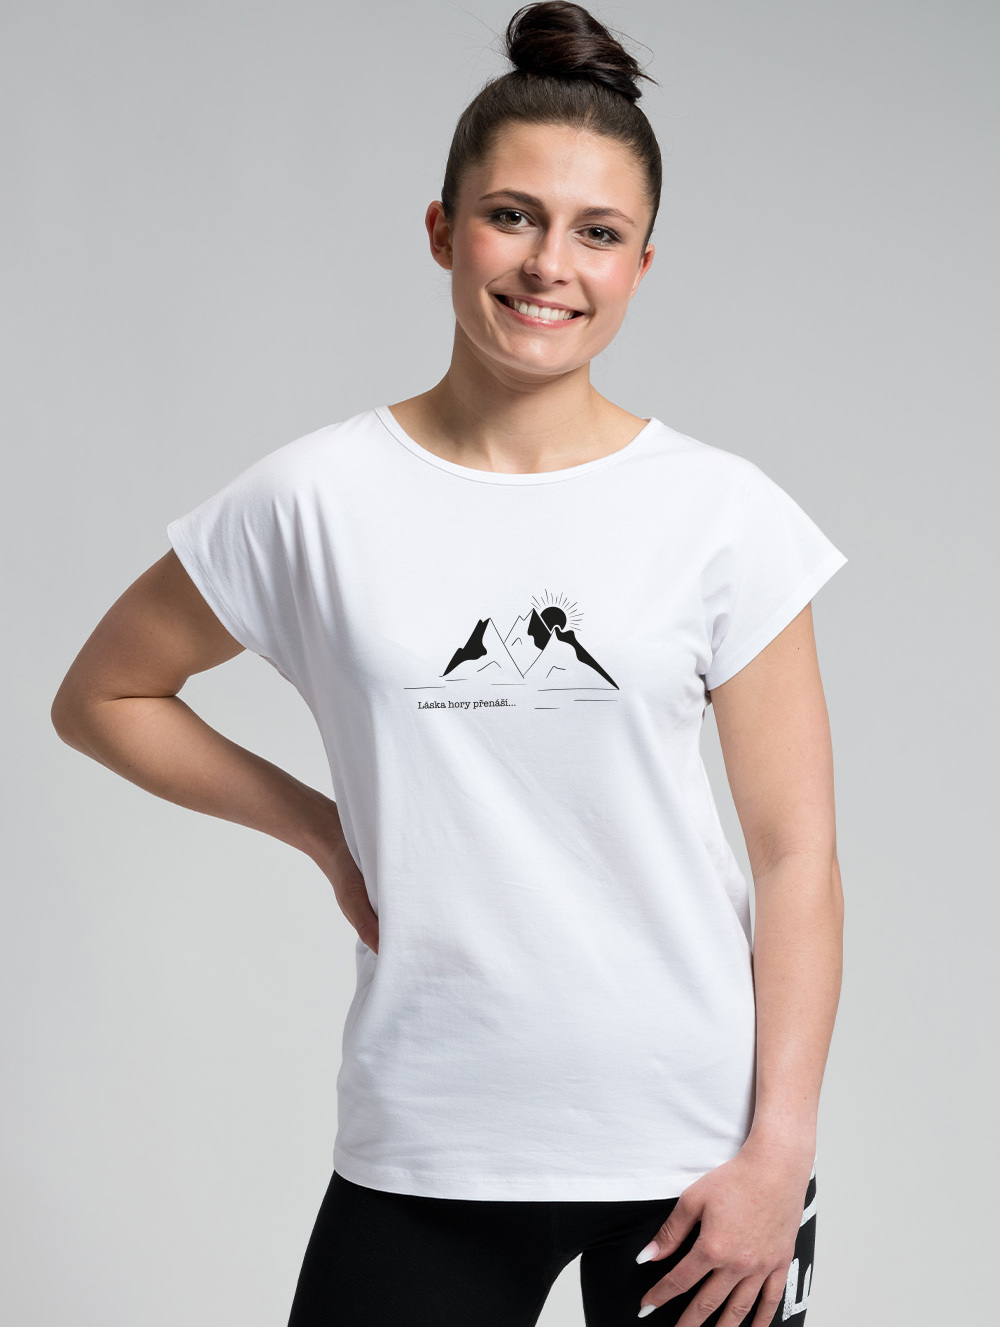 Dámské bavlněné tričko CITYZEN bílé Láska hory přenáší Velikost: XS/36